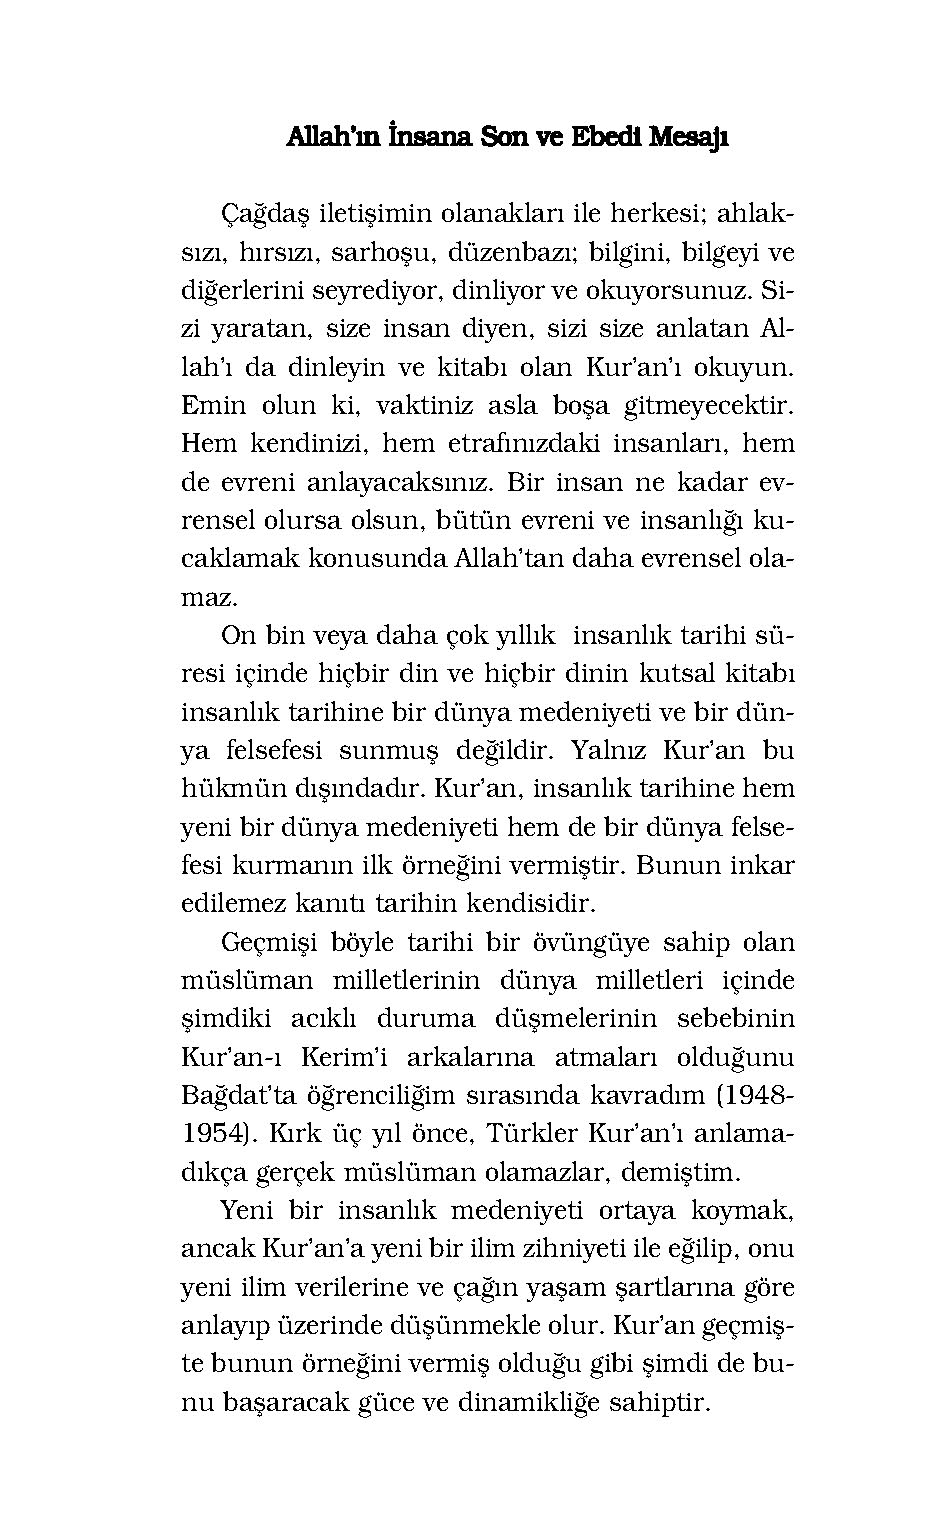 Kur'an-ı Kerim ve Türkçe Çevirisi